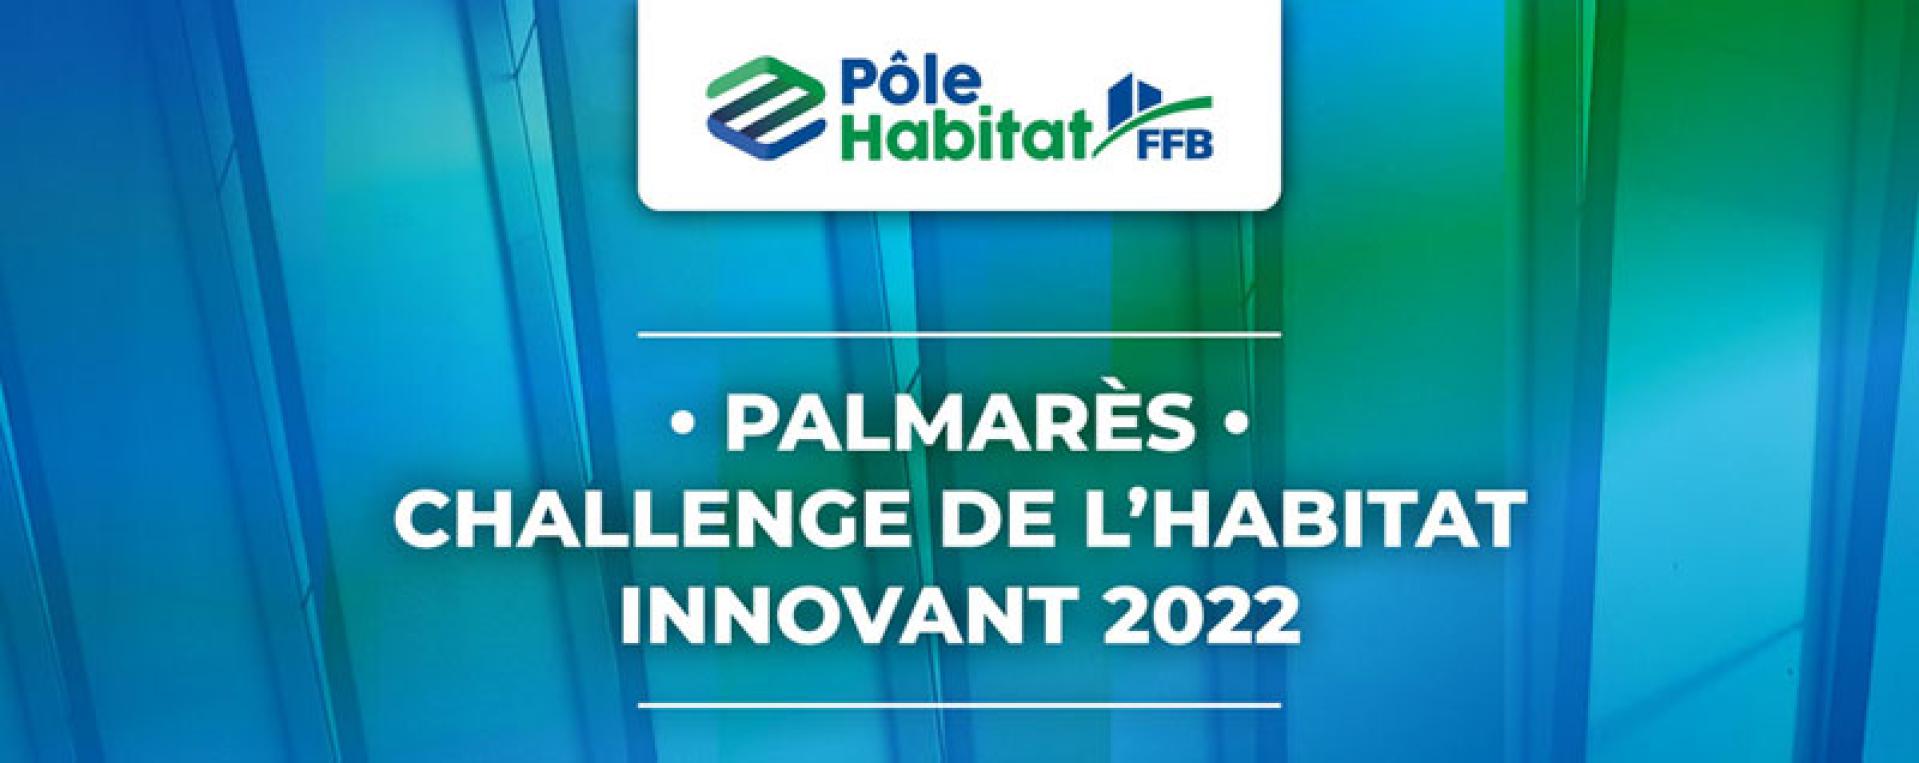 Palmares challenge de l'habitat innovant 2022